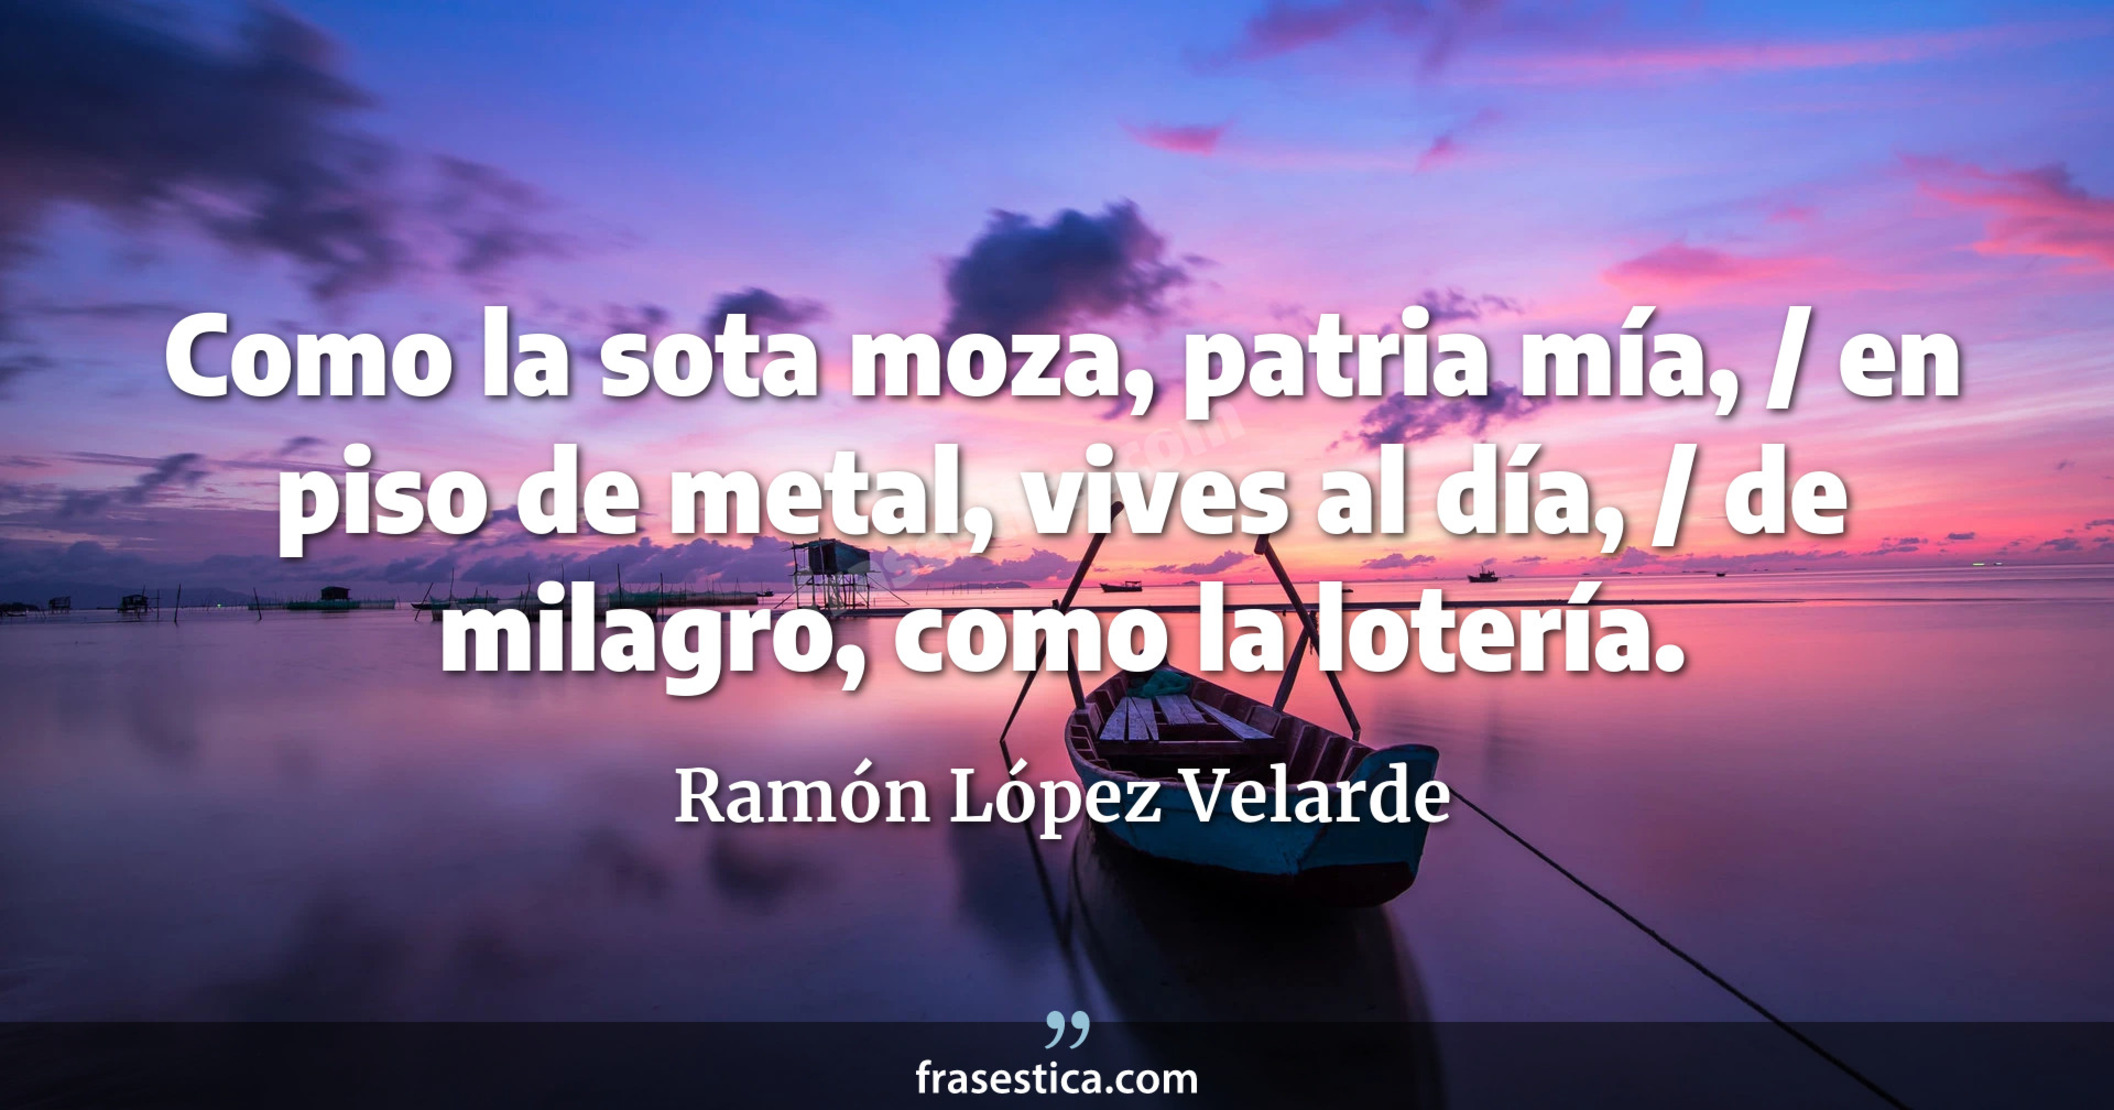 Como la sota moza, patria mía, / en piso de metal, vives al día, / de milagro, como la lotería. - Ramón López Velarde